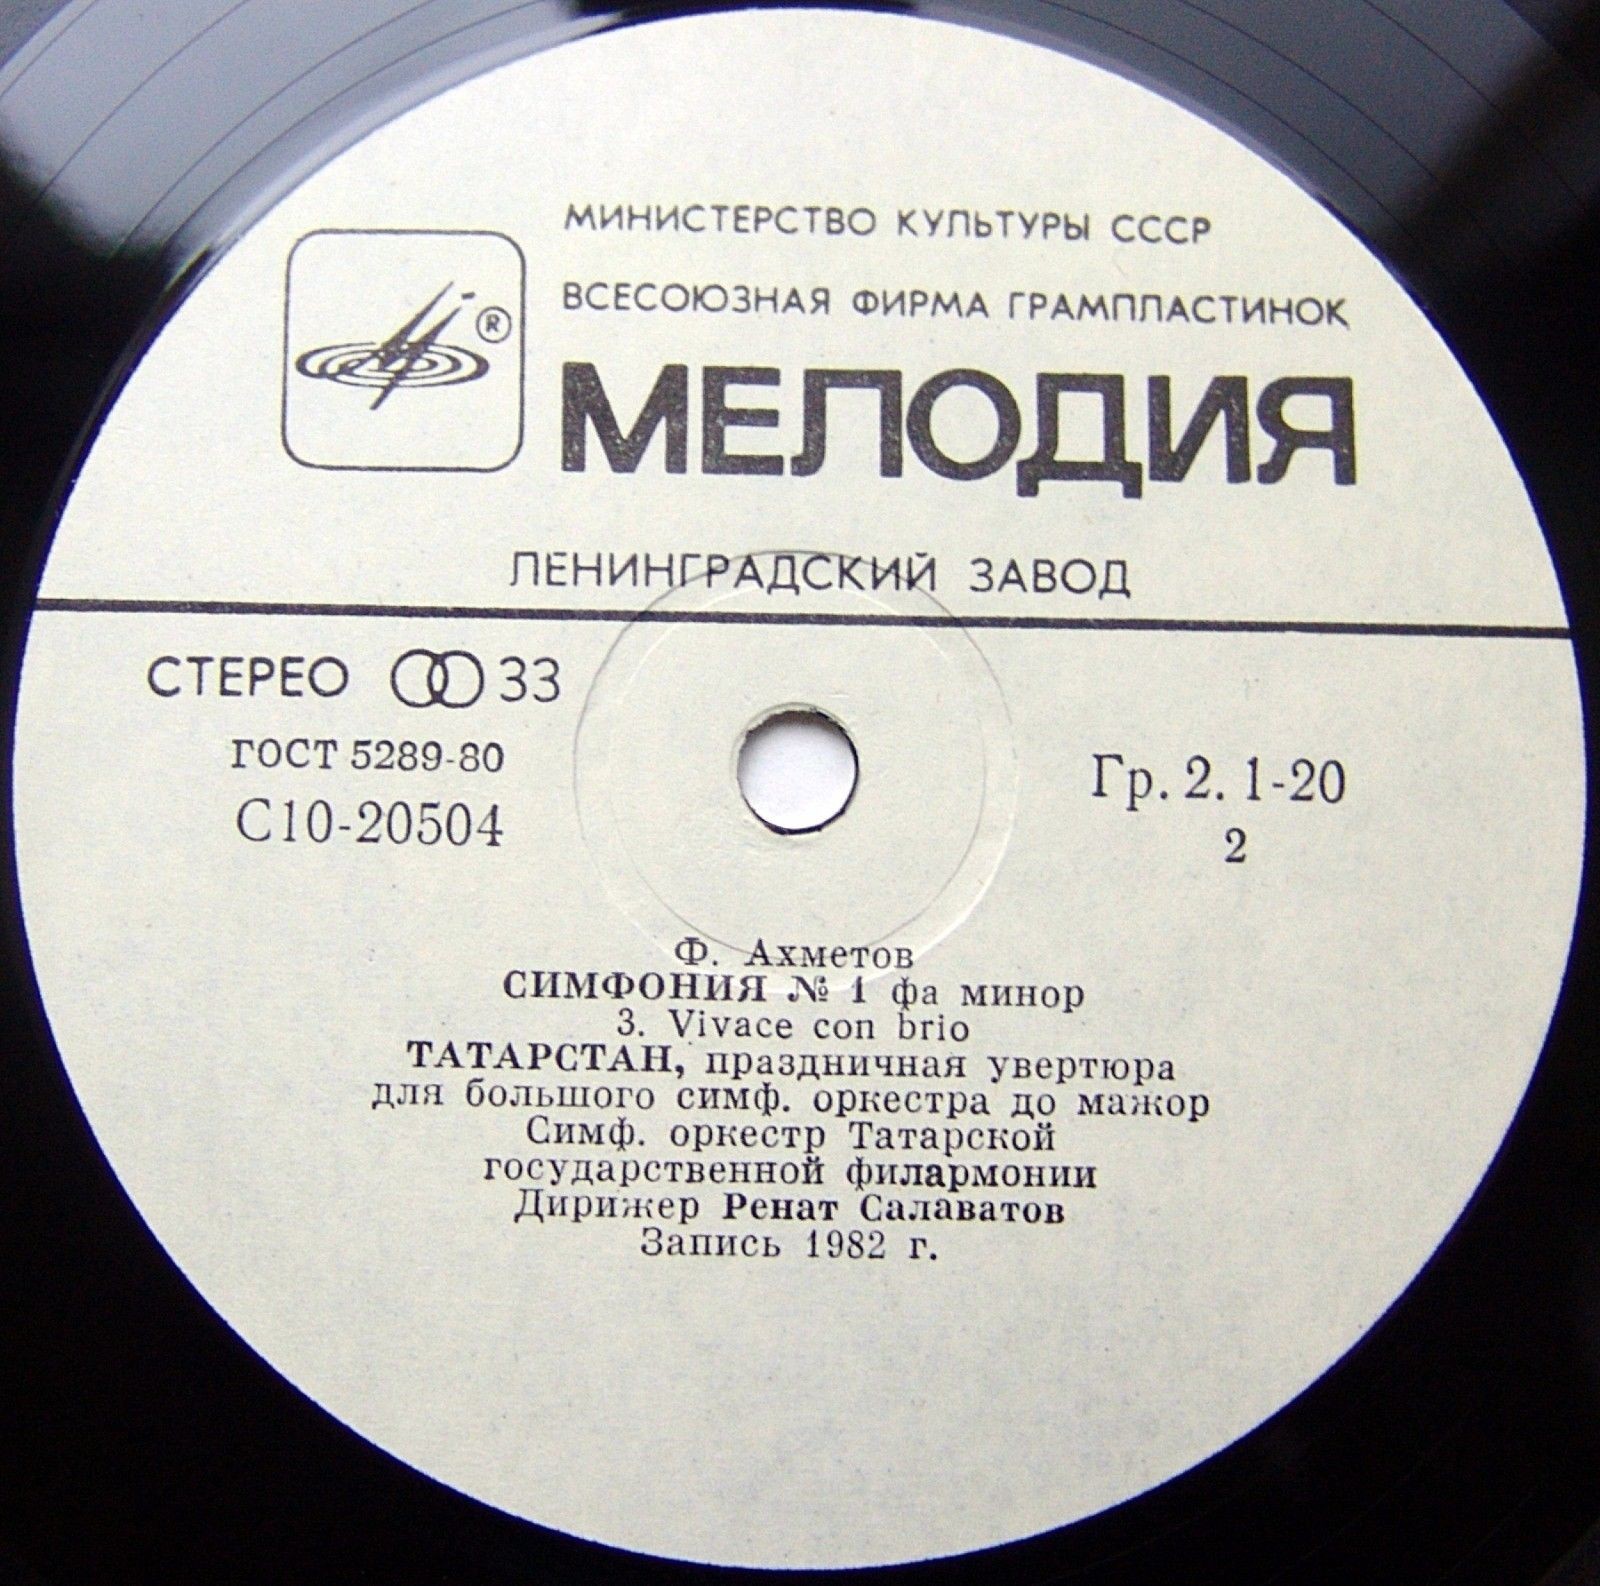 Ф. АХМЕТОВ (1935): Симфоническая музыка